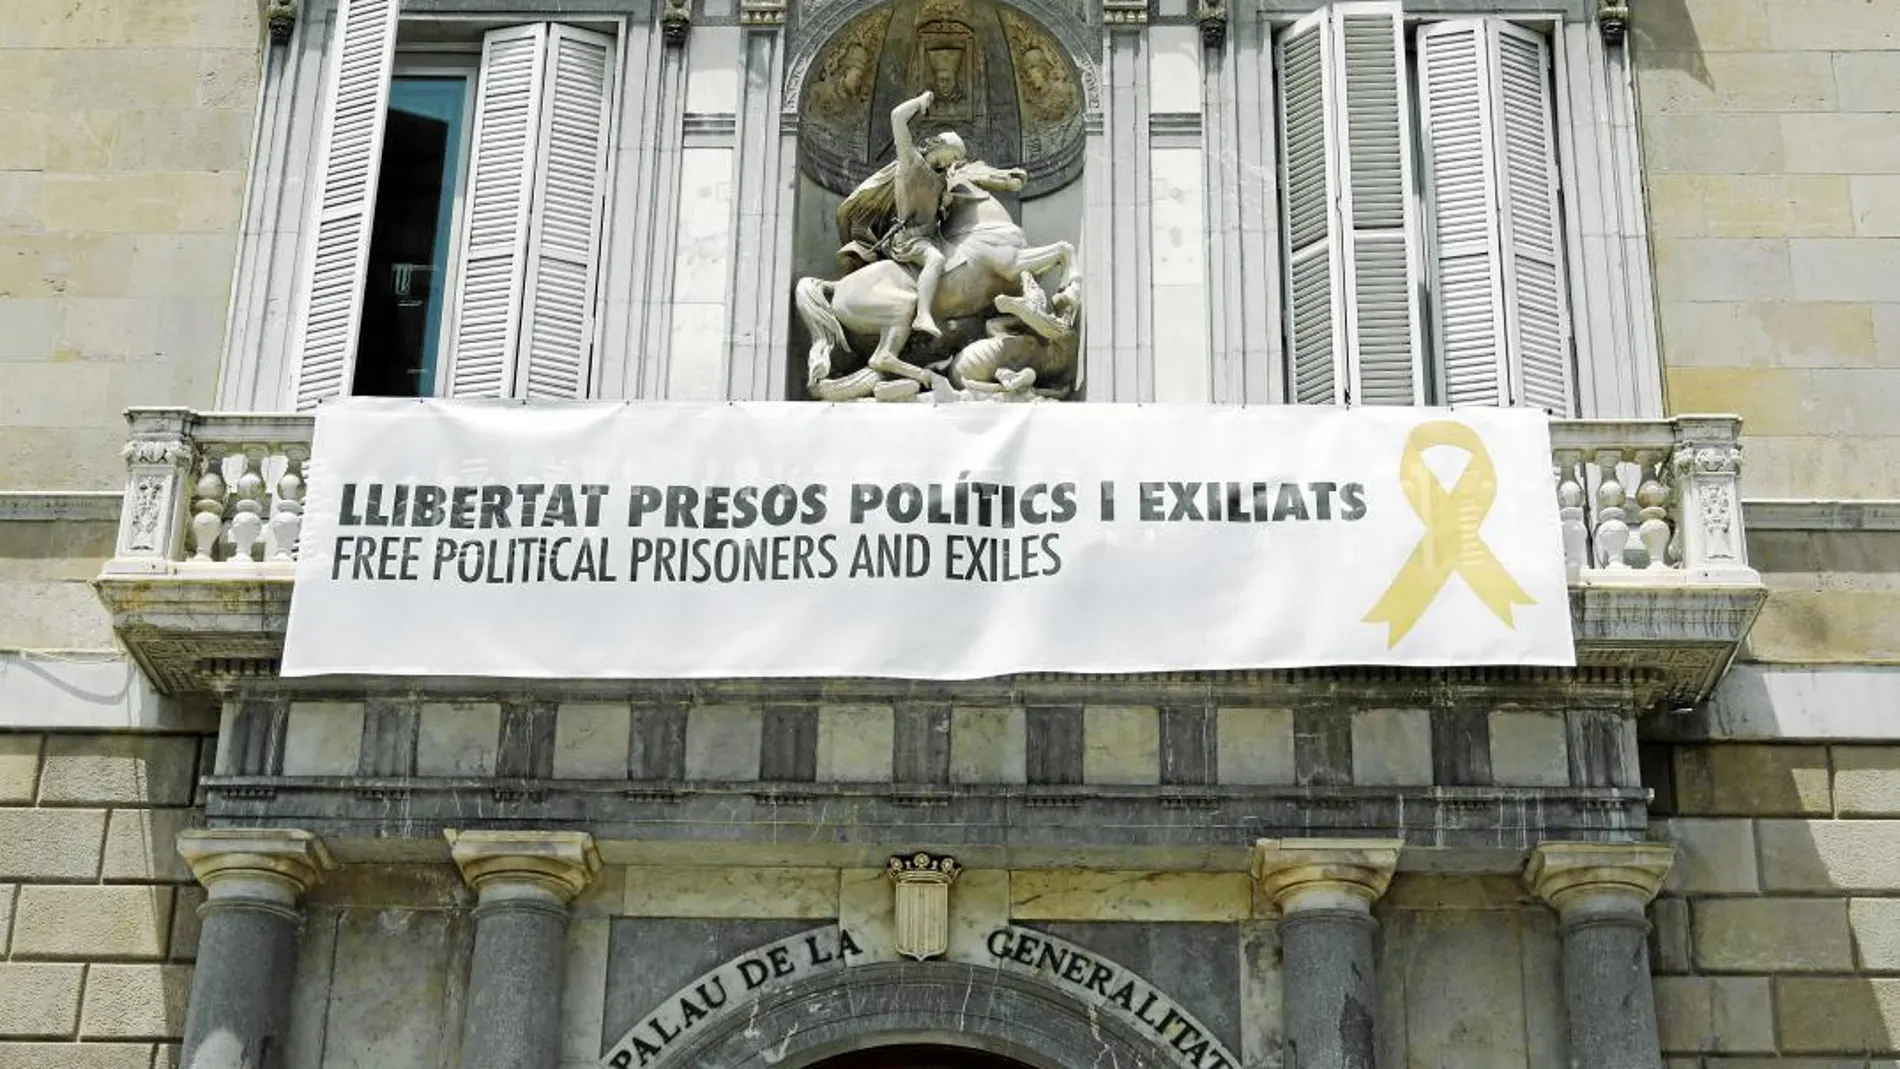 Colgar una pancarta a favor de la liberación de los presos fue lo primero que hizo Quim Torra al llegar a la Generalitat. Inés Arrimadas no ha acudido al Palau por la presencia de este símbolo. / Efe